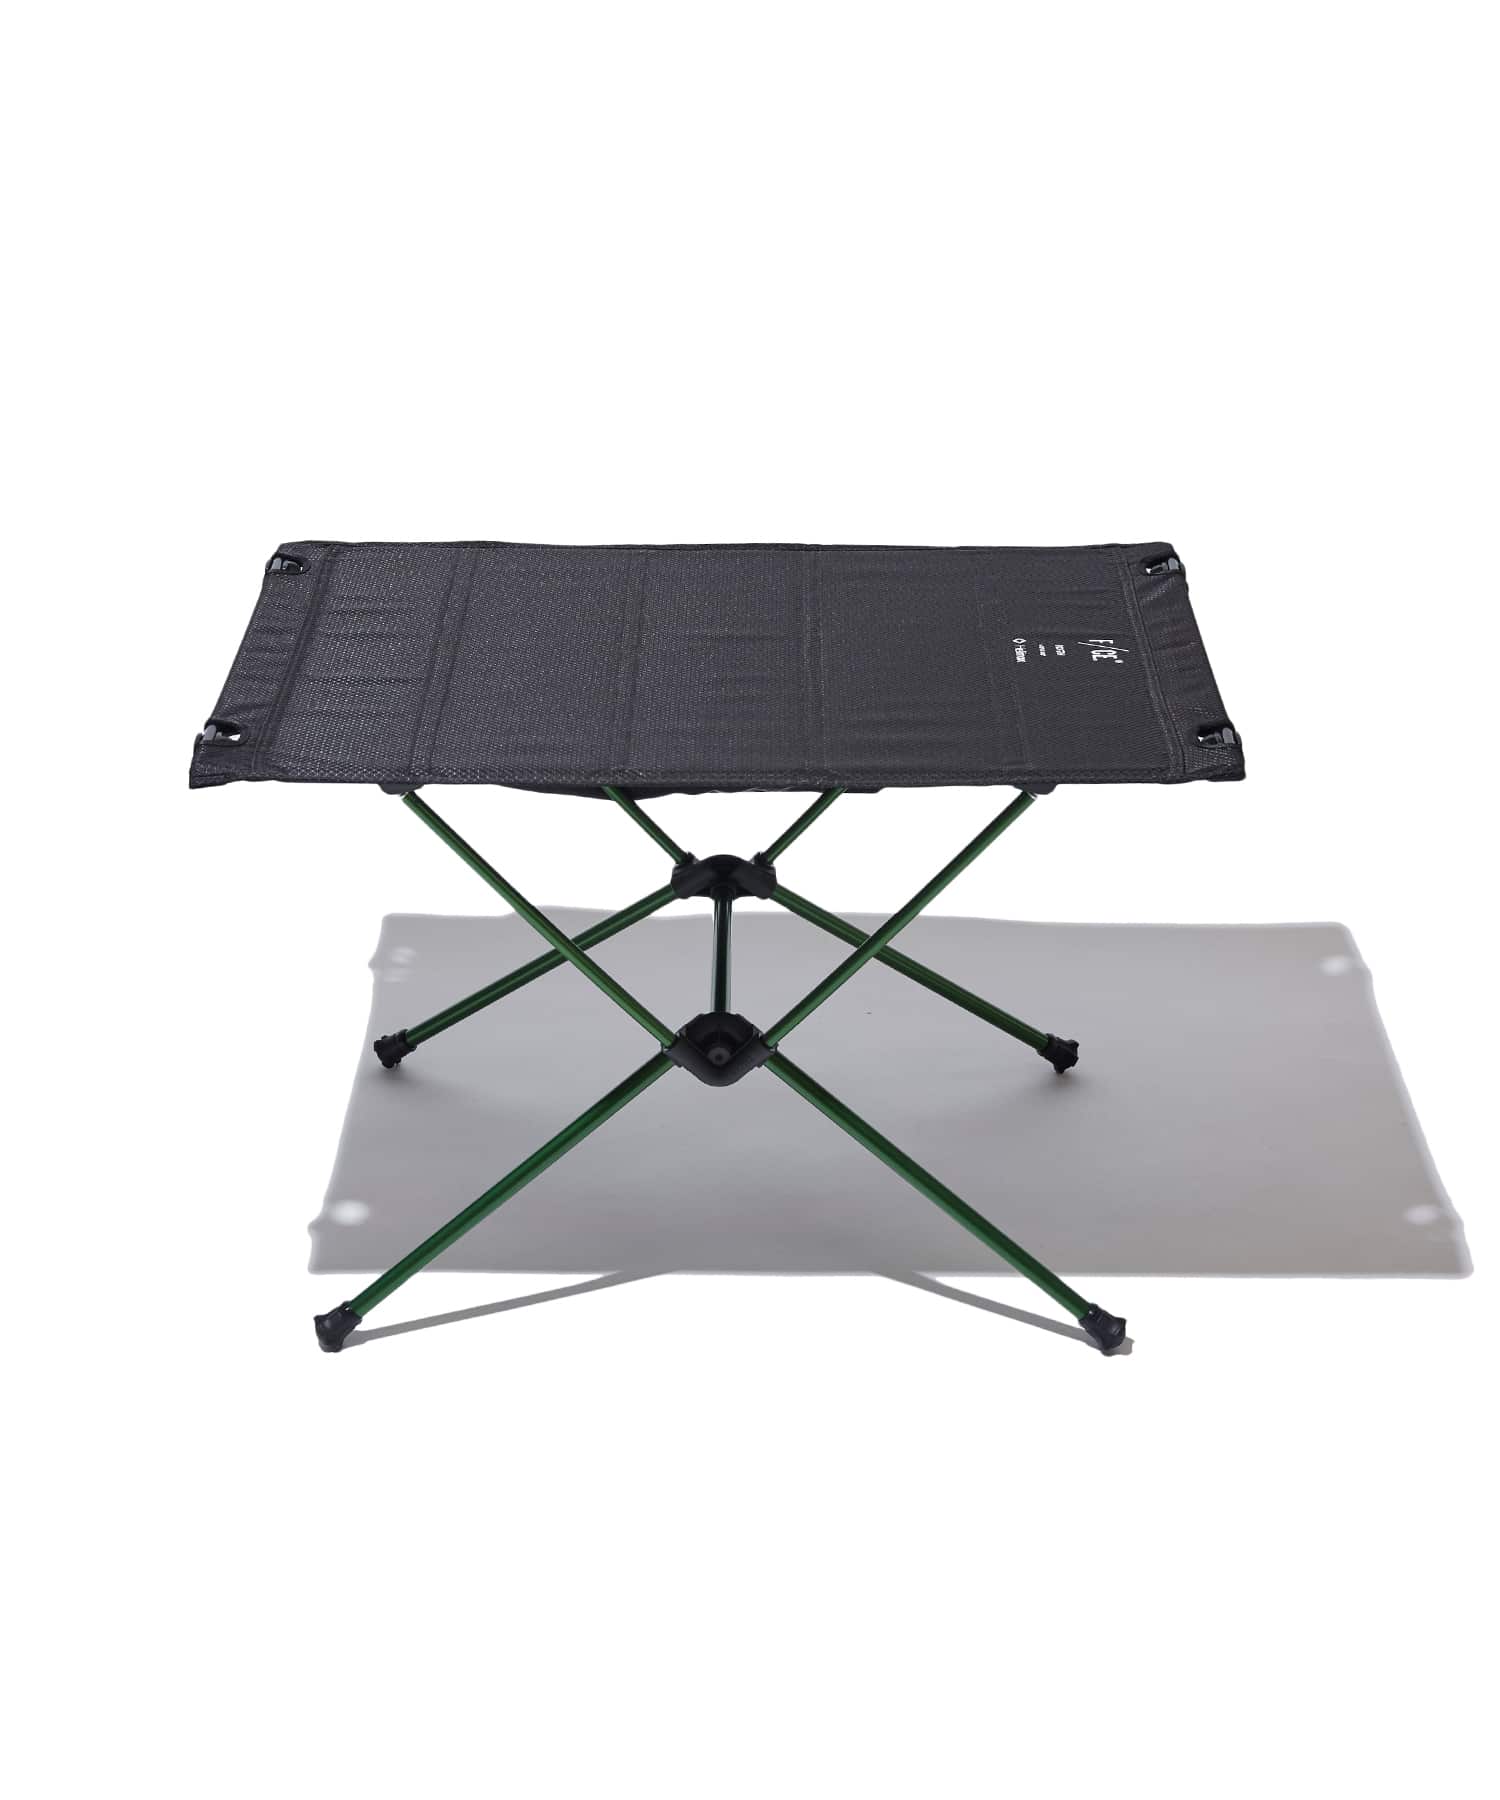 アウトドア テーブル/チェア F/CE. 10TH Helinox Tactical Table M SPECTRA / エフシーイー ヘリ 